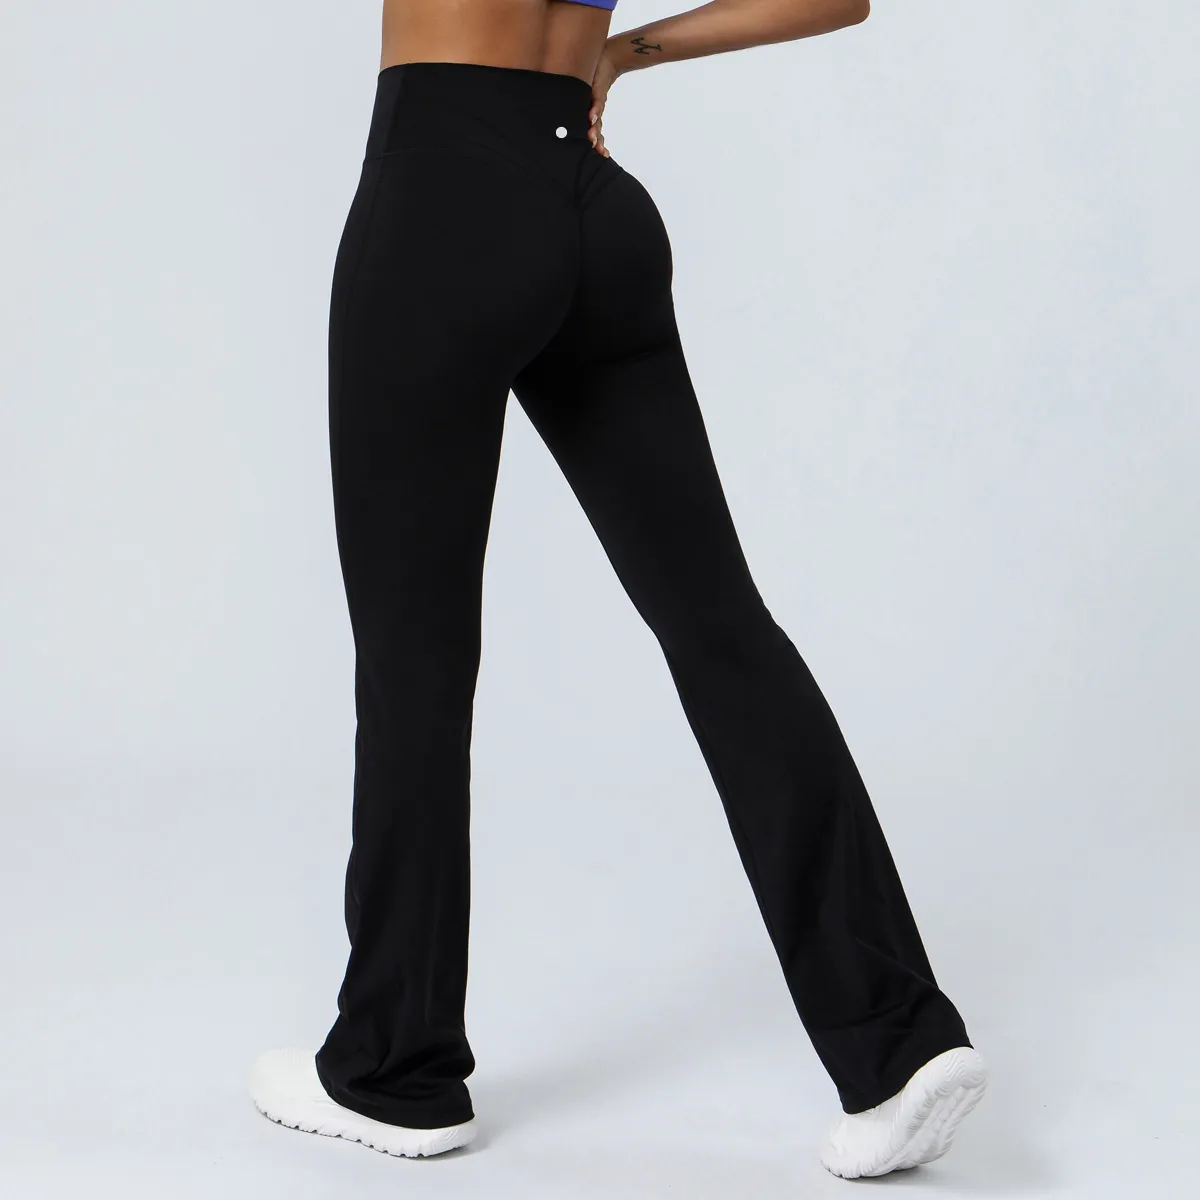 Calça feminina bootcut yoga cintura alta treino bootleg com bolsos flare calça social de trabalho